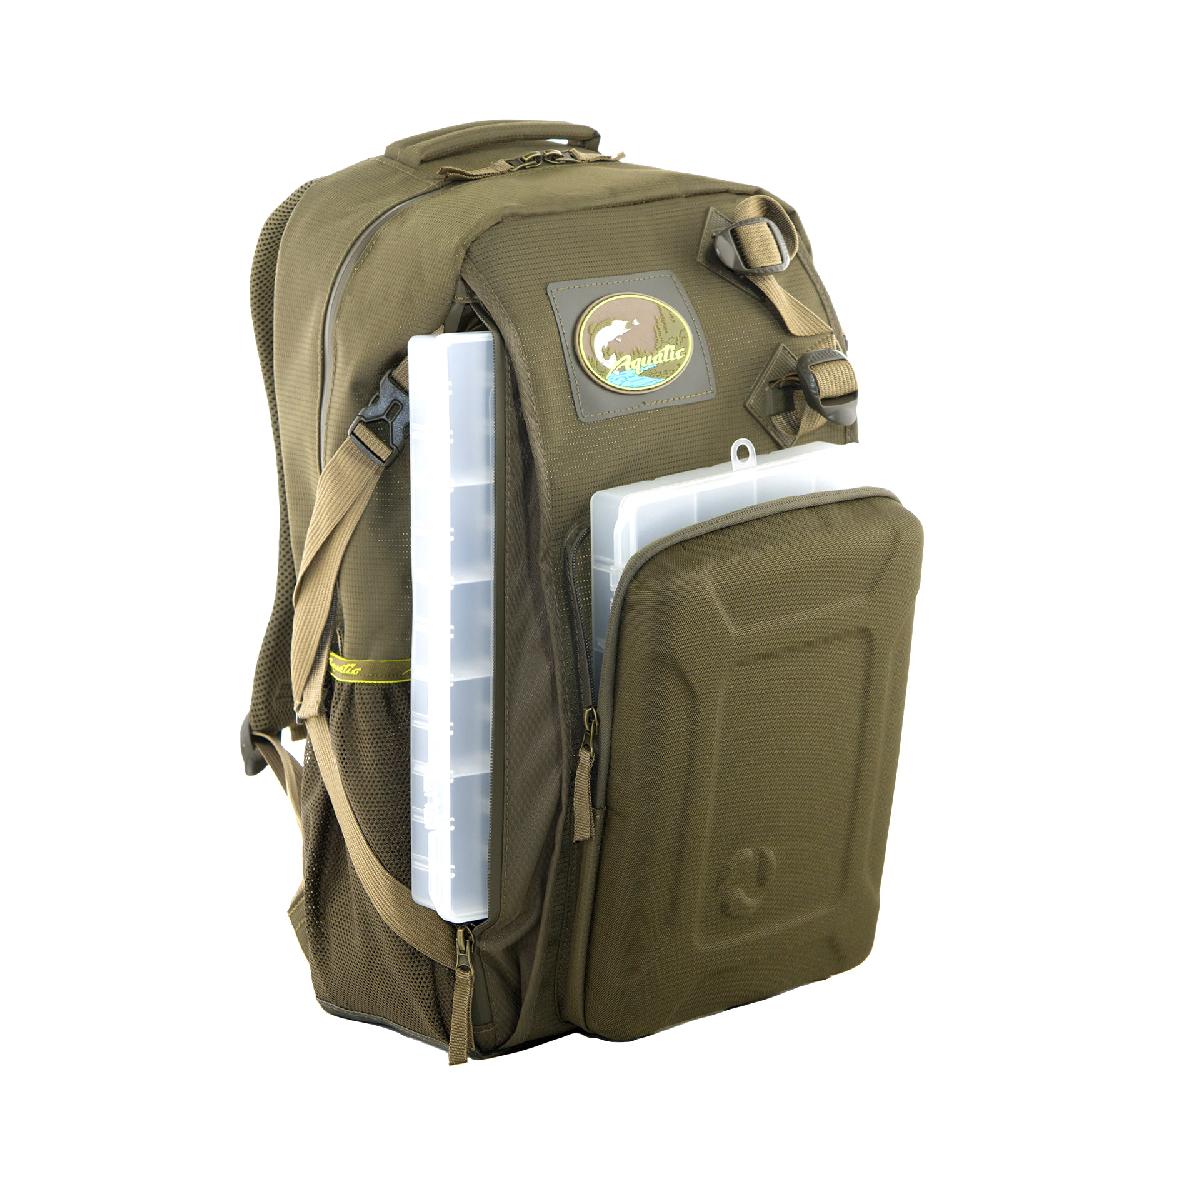 Рюкзак AQUATIC РК-02Х рыболовный с коробками FisherBox (цвет:хаки)